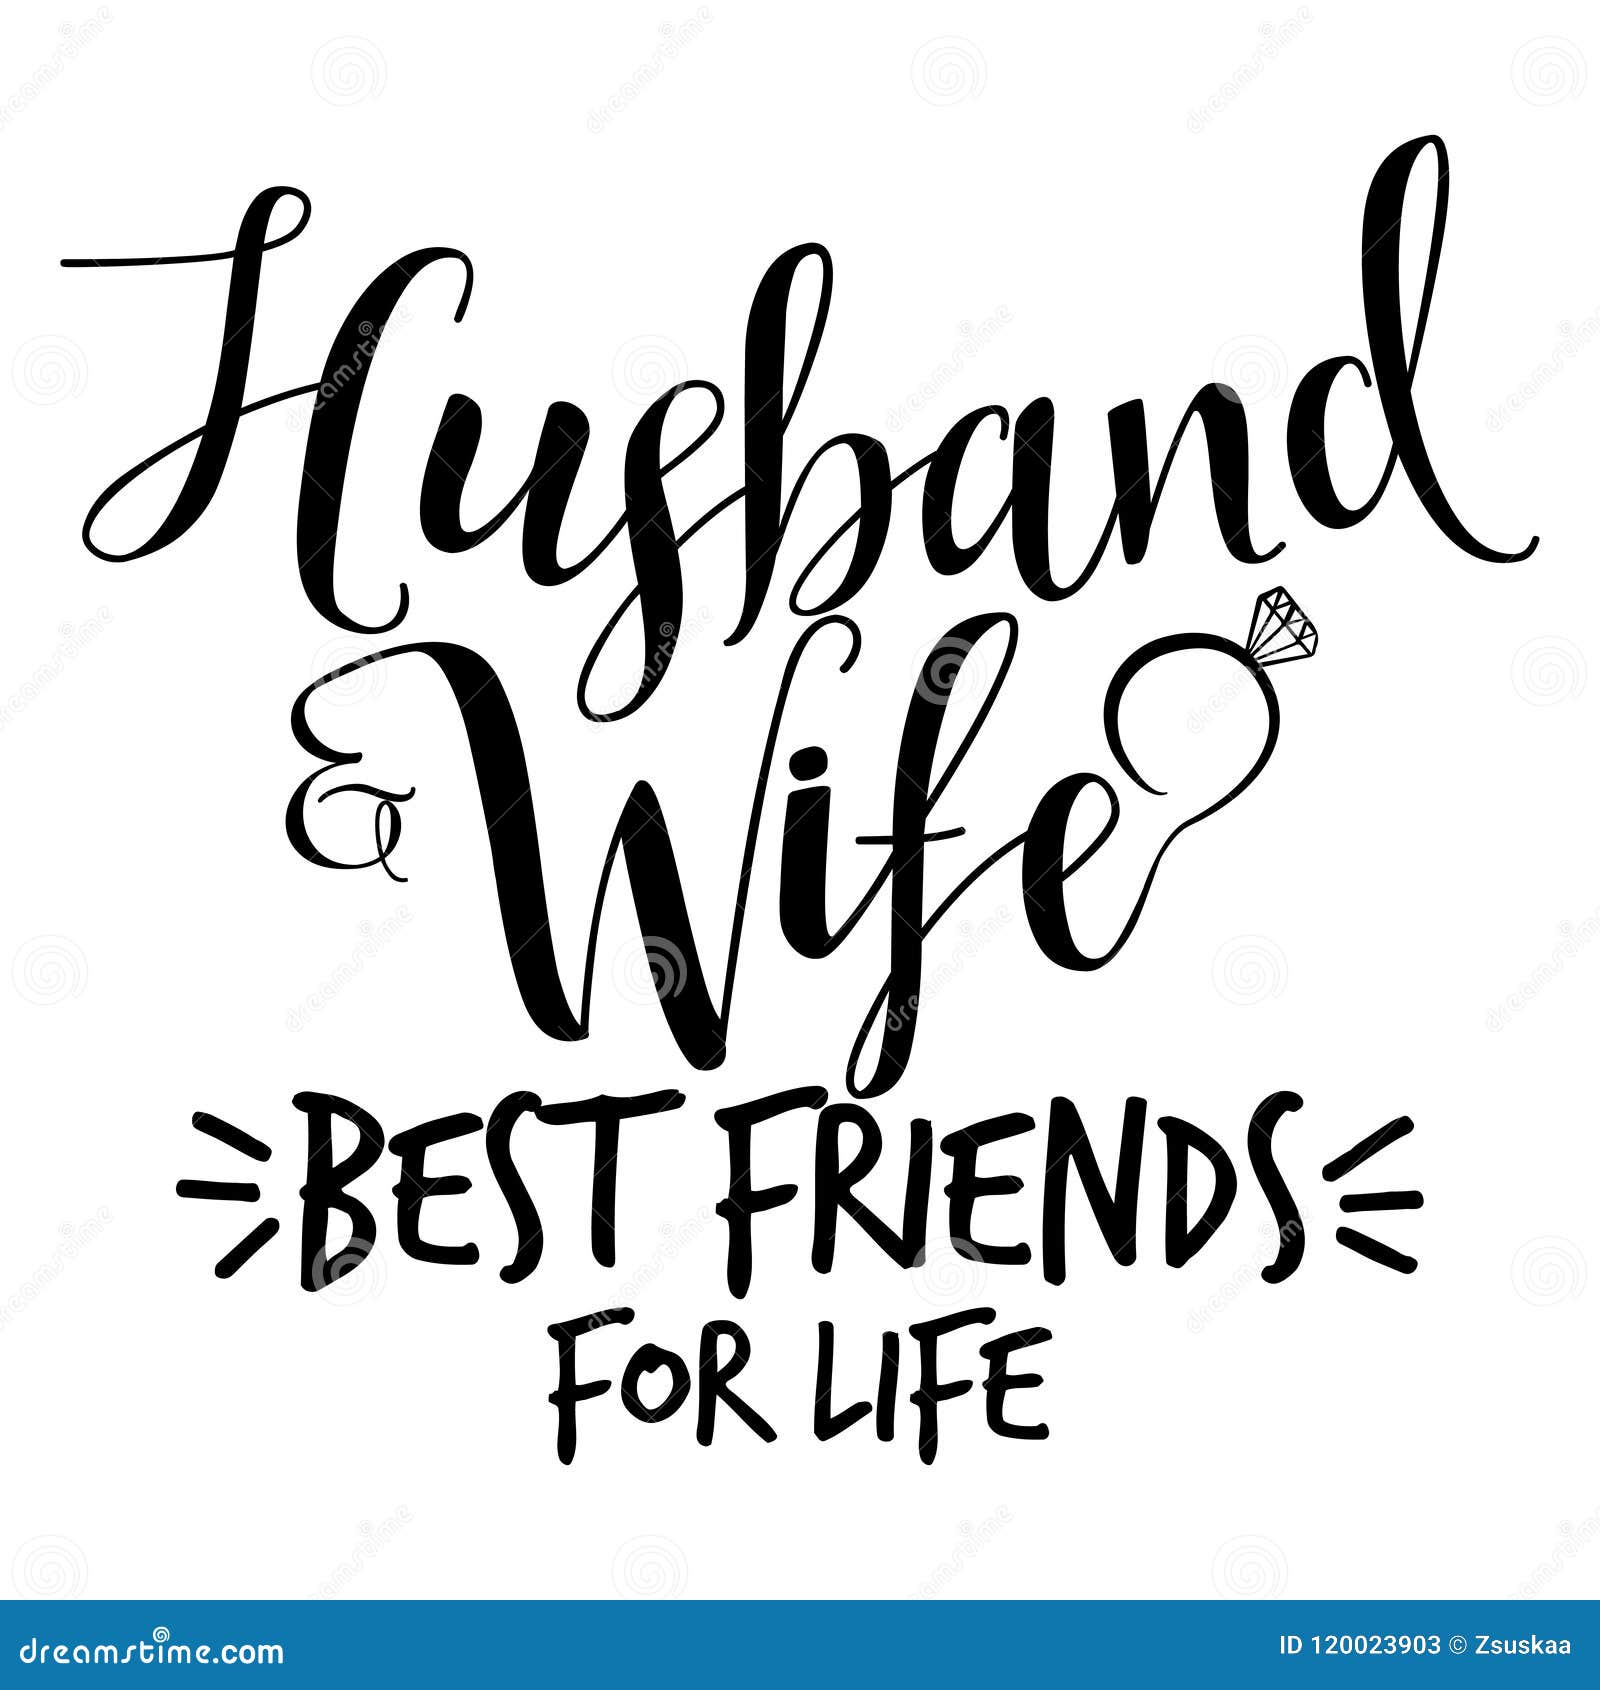 Wife Best Husband